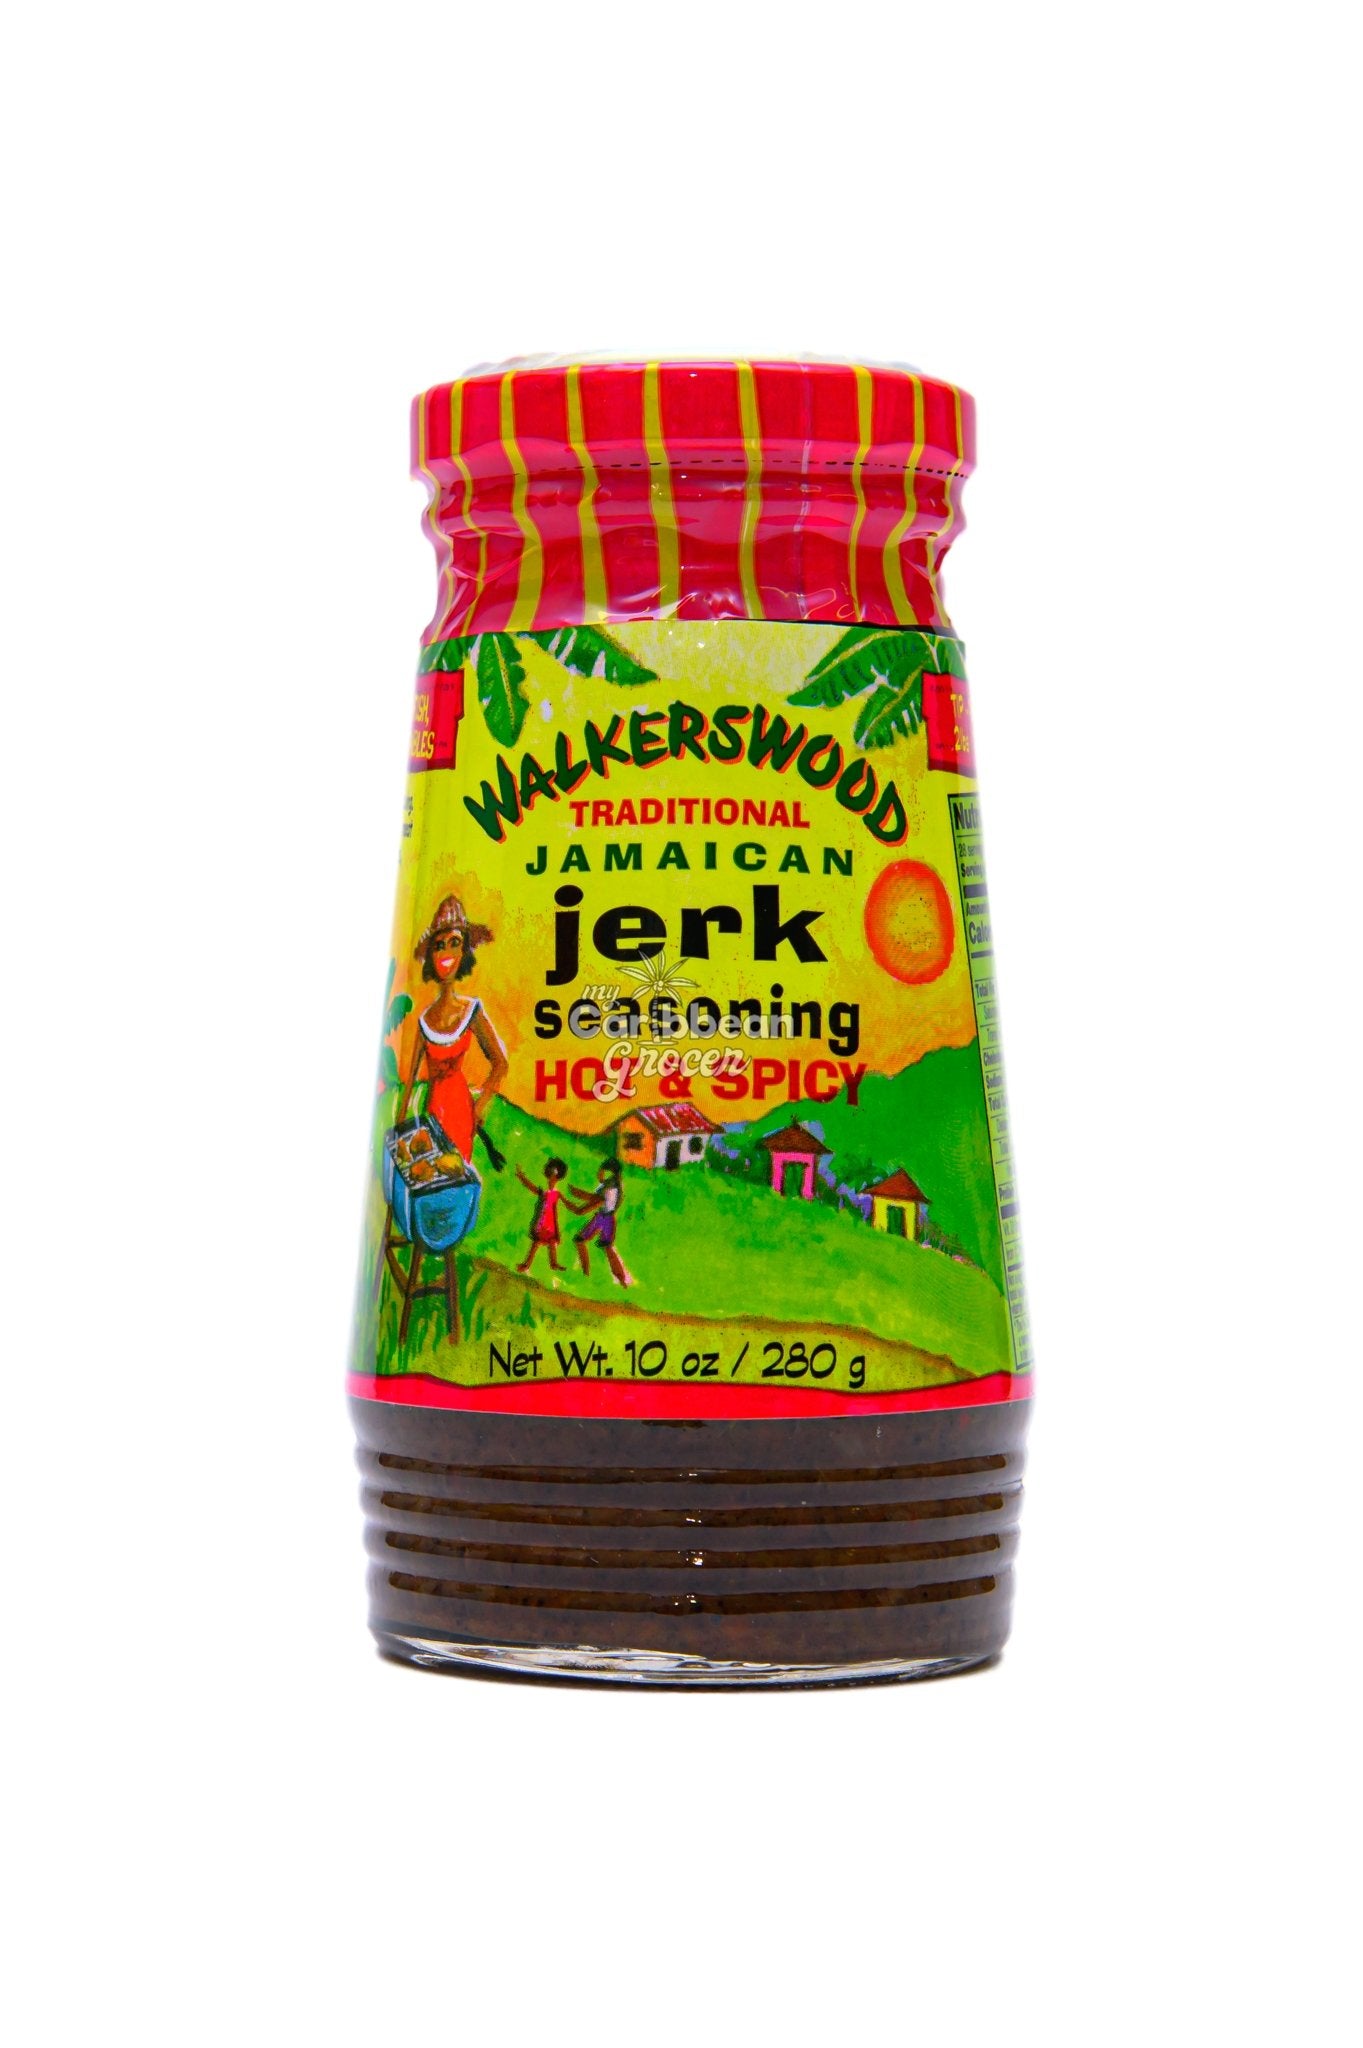 Walkerswood Jamaican Jerk Seasoning Mixed Pack - 10 Oz Each Mild, Hot &  Spicy